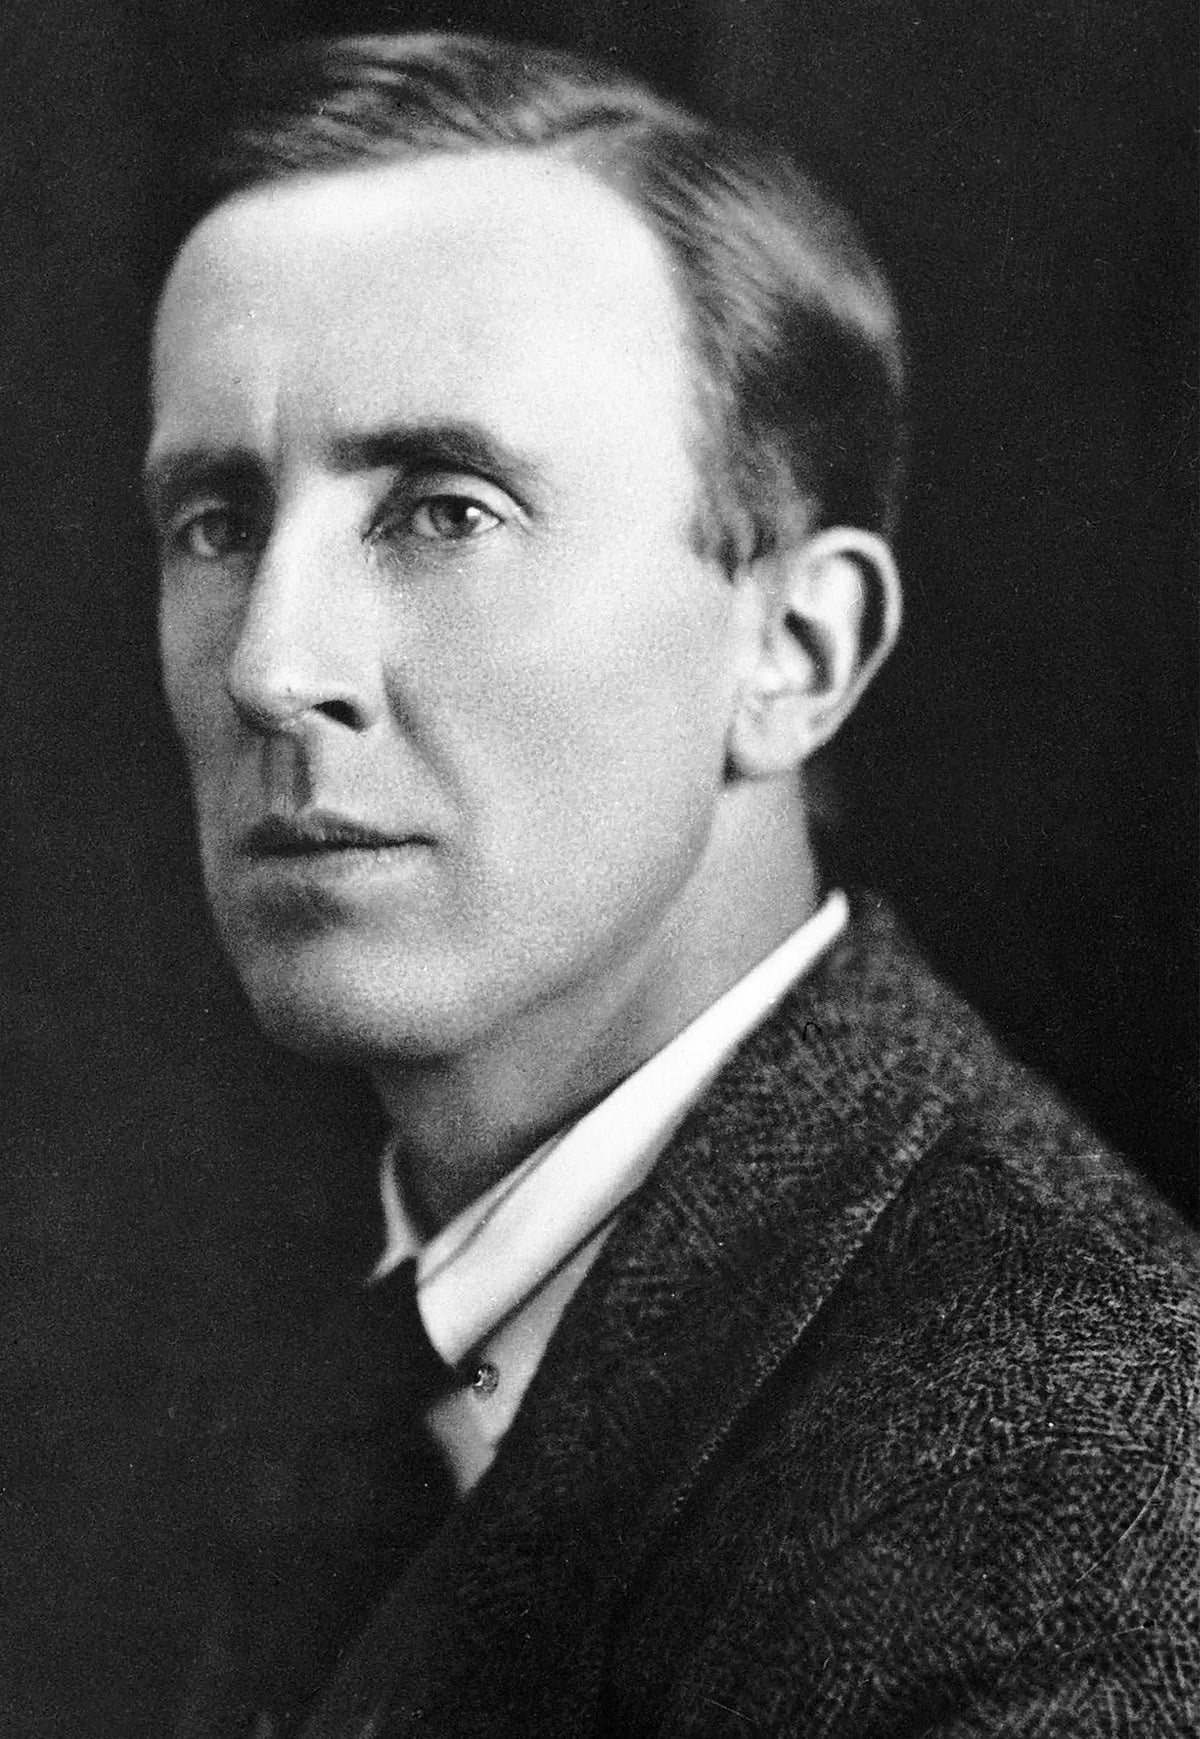 J. R. R. Tolkien ca. 1925